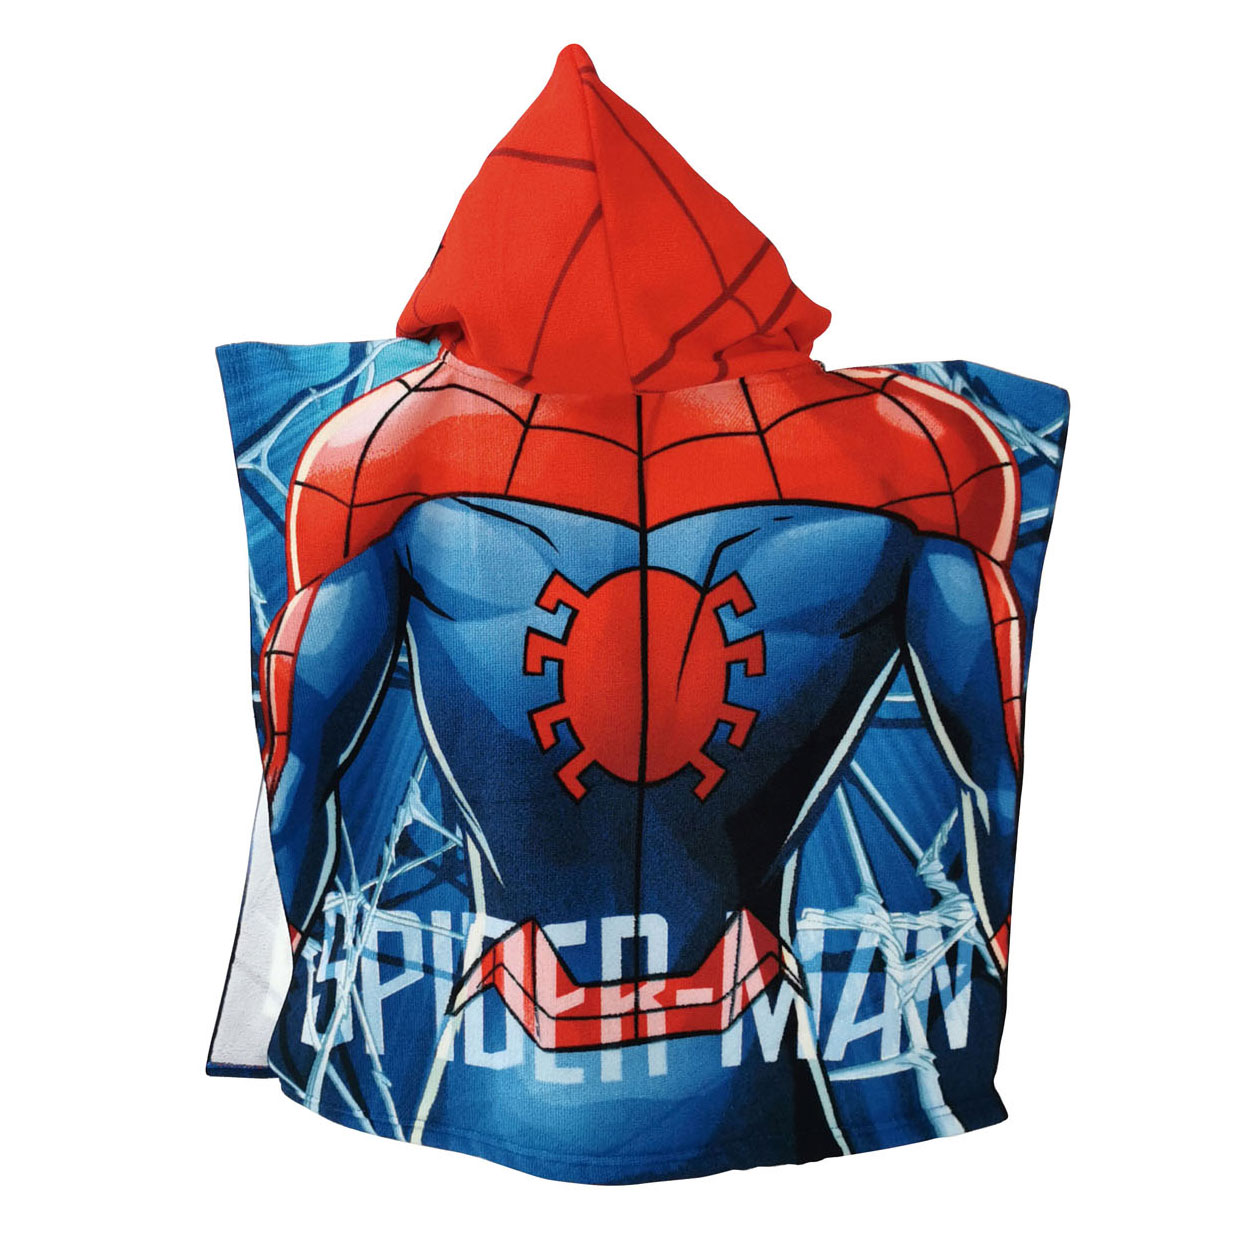 Handtuchponcho Spiderman, 55x55cm